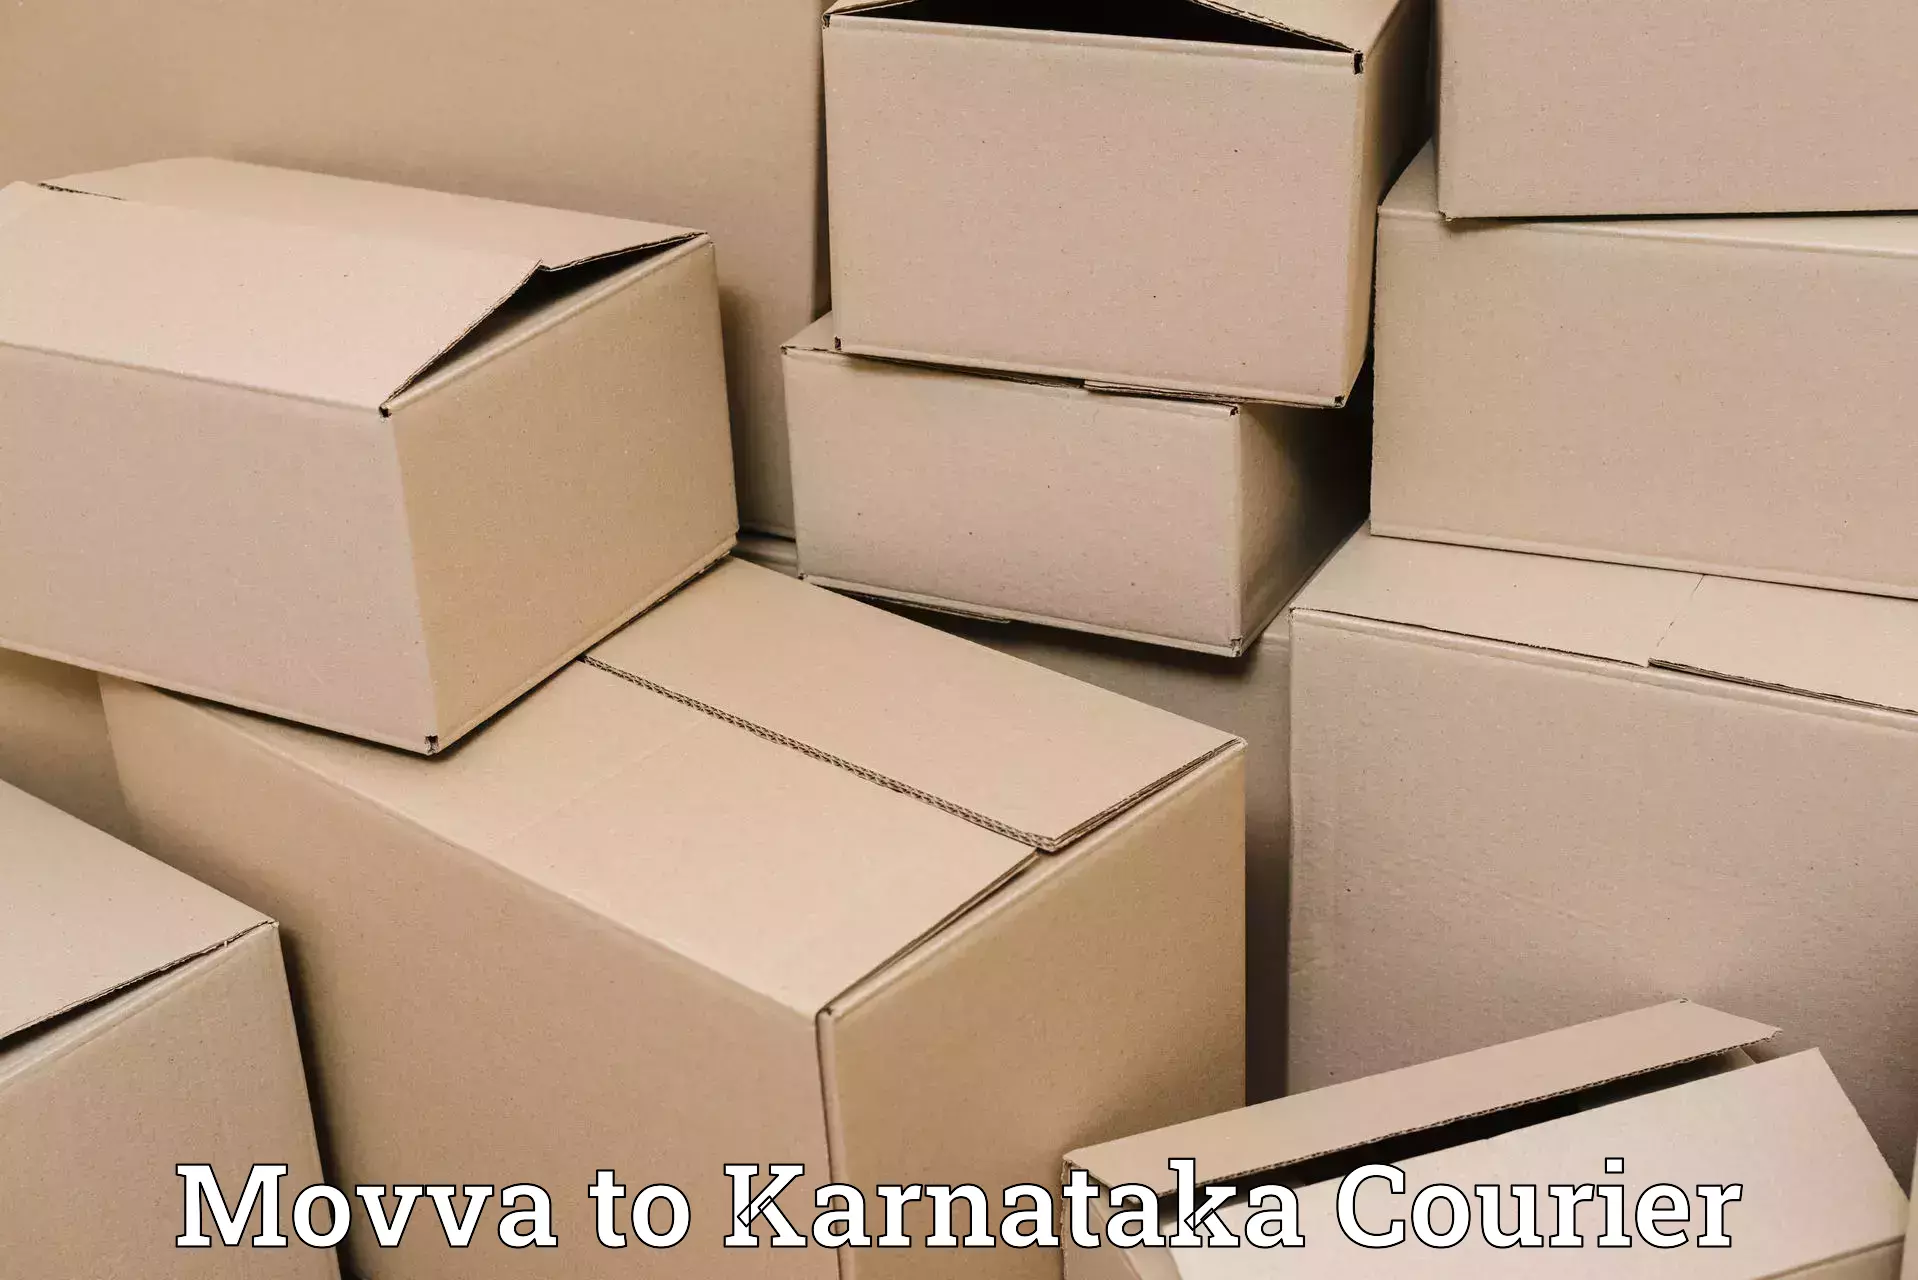 Efficient parcel delivery Movva to Udupi